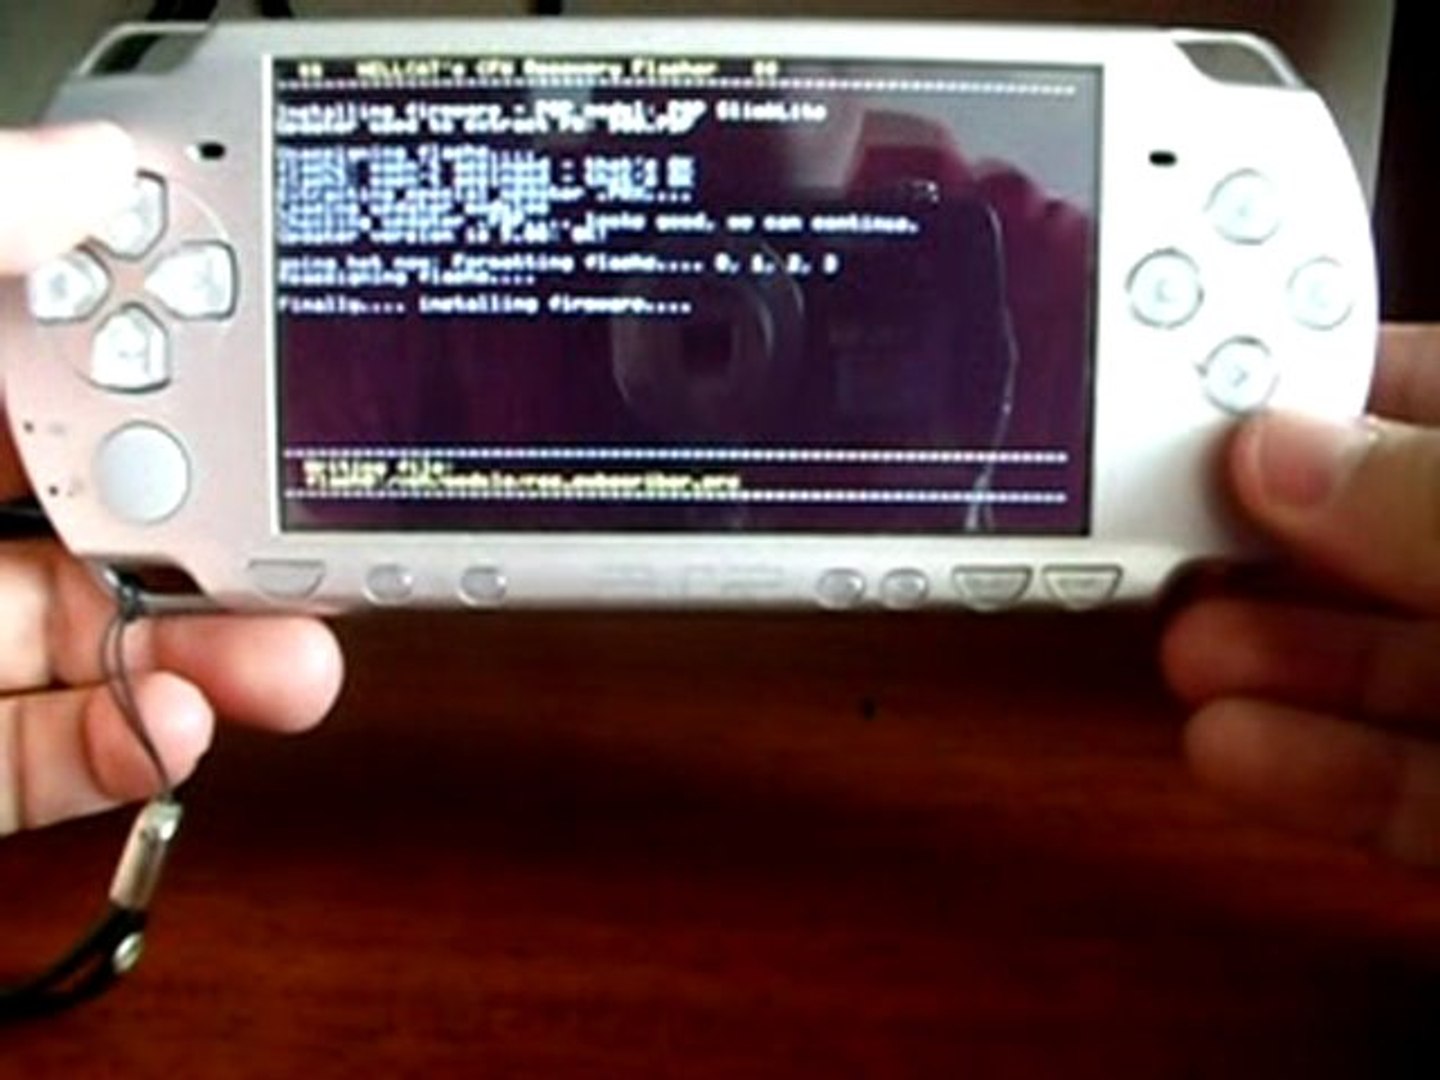 Cómo liberar una PSP sin batería Pandora - Vídeo Dailymotion